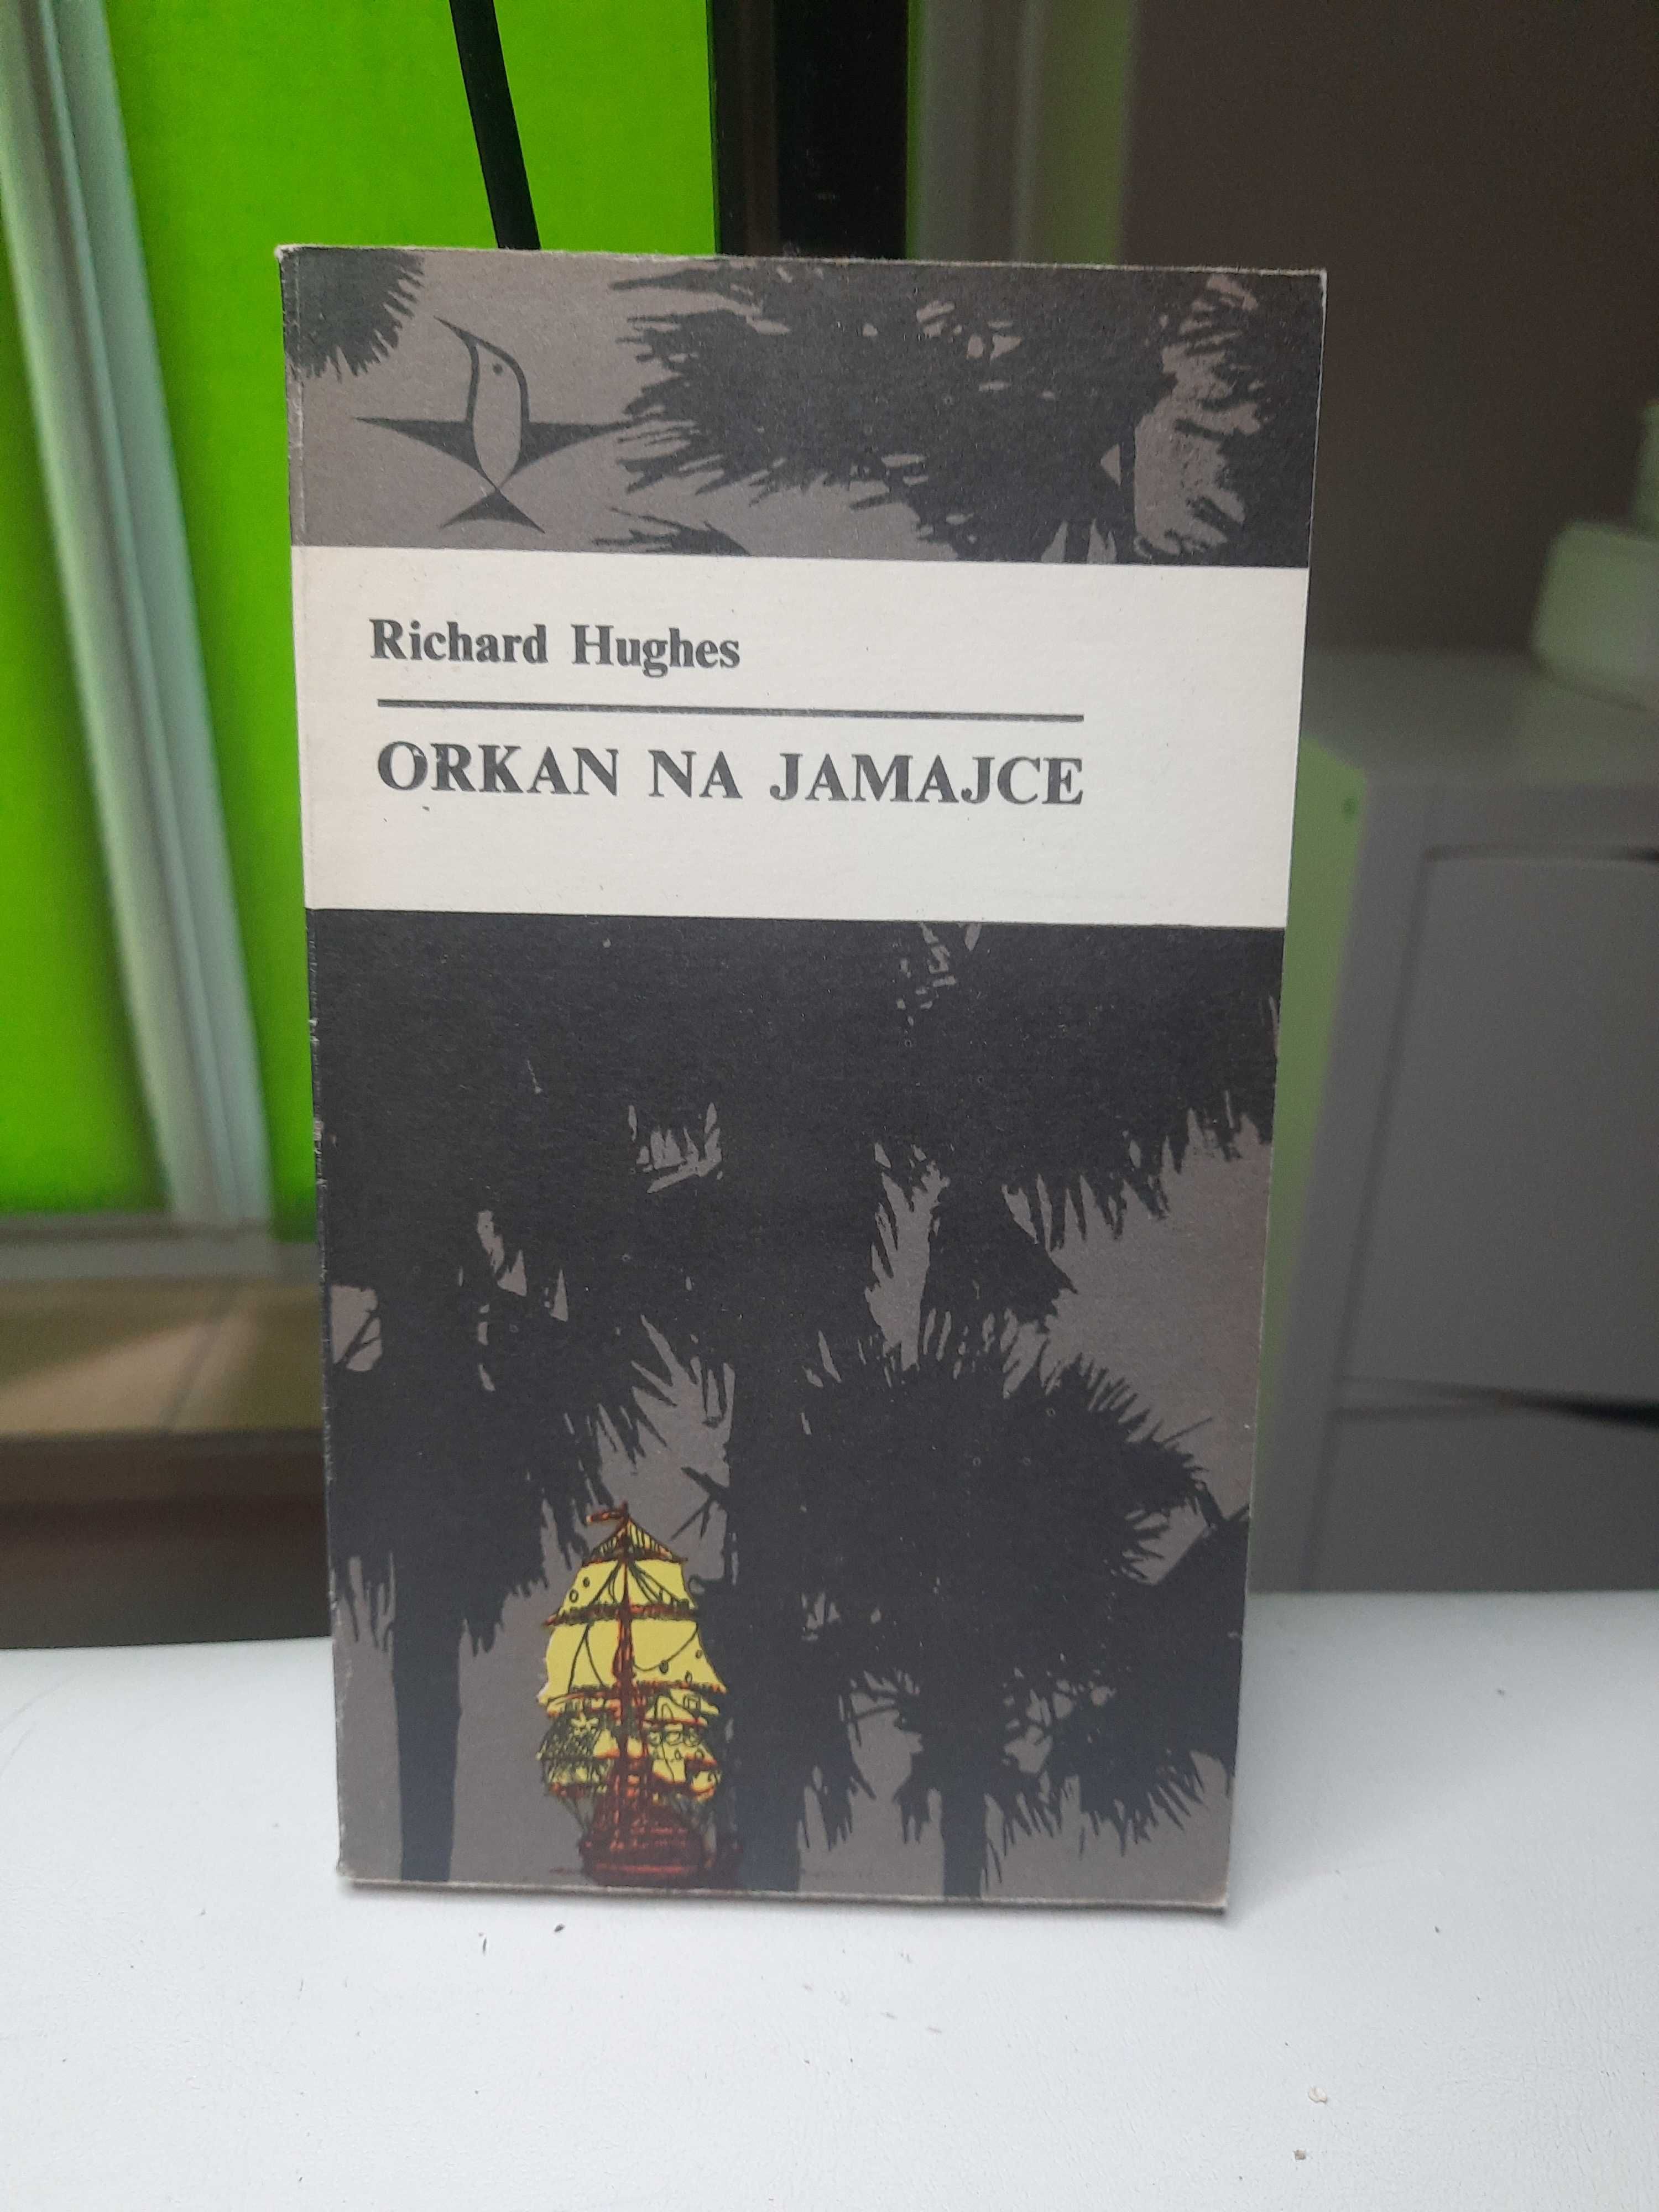 Richard Hughes "Orkan na Jamajce"